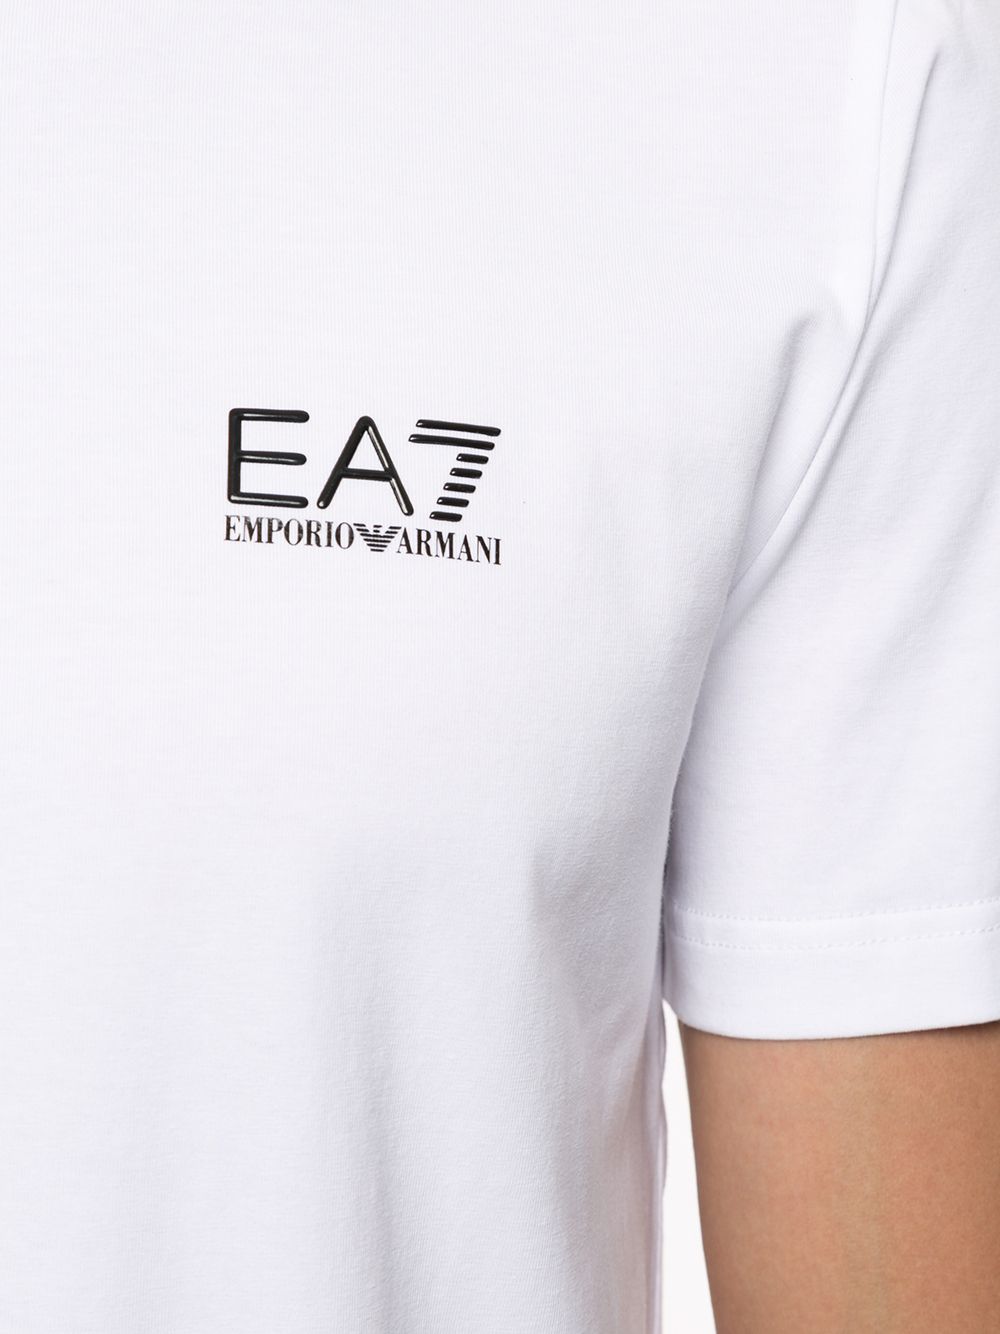 фото Ea7 emporio armani футболка с v-образным вырезом